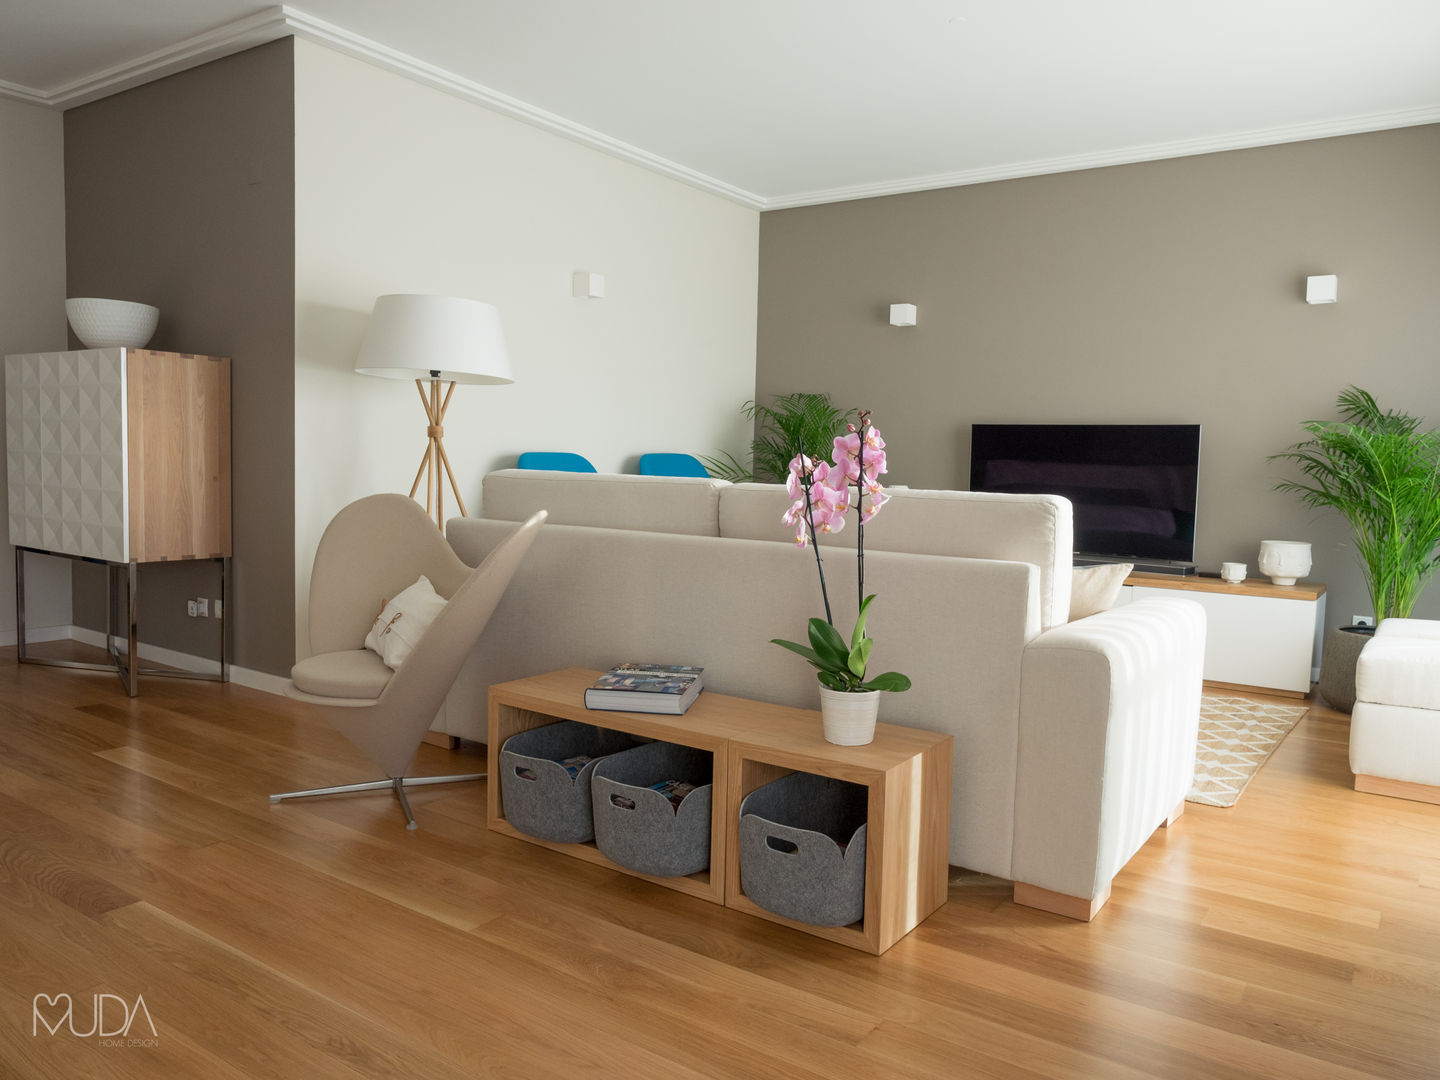 CB Apartment - Lisbon, MUDA Home Design MUDA Home Design Living room